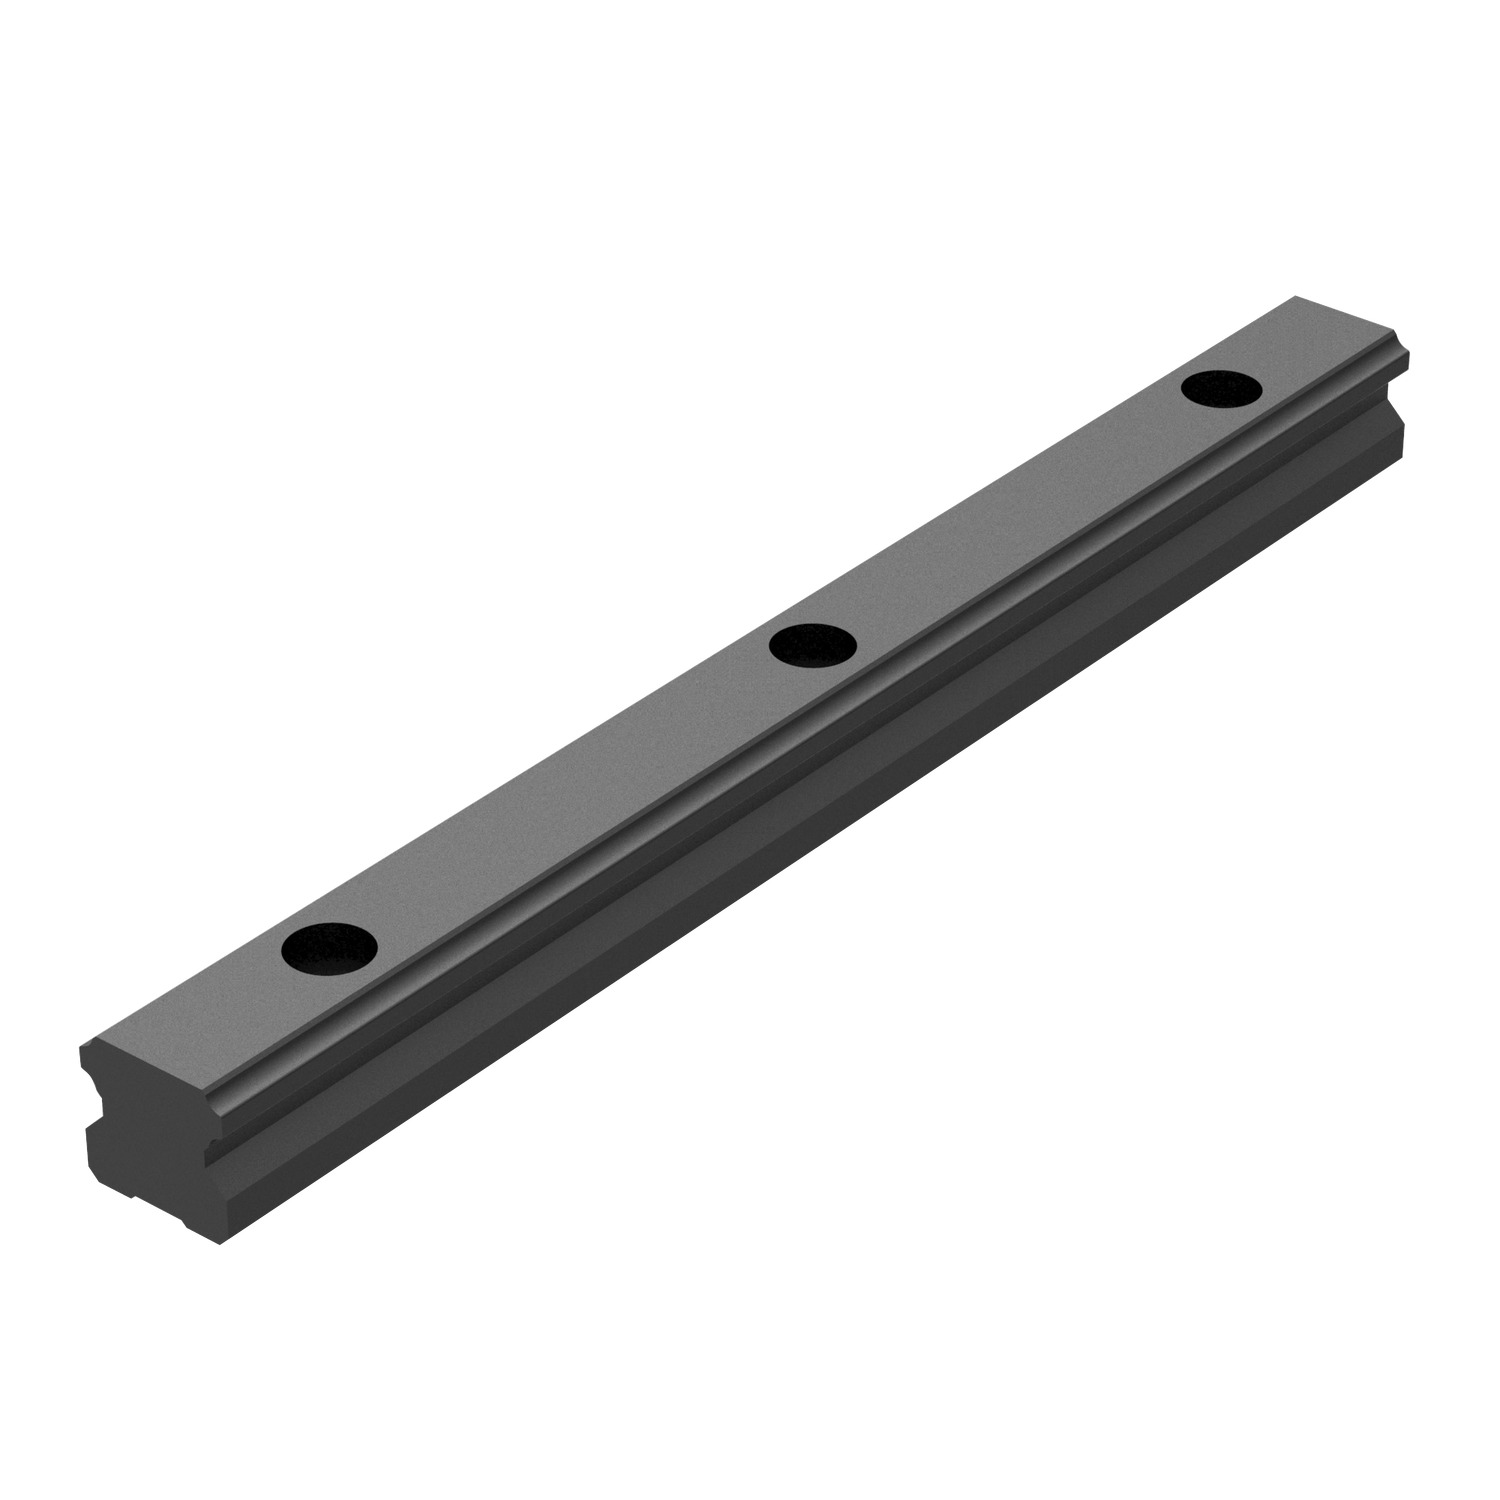 L1016.BL - 15mm Linear Guide Rail